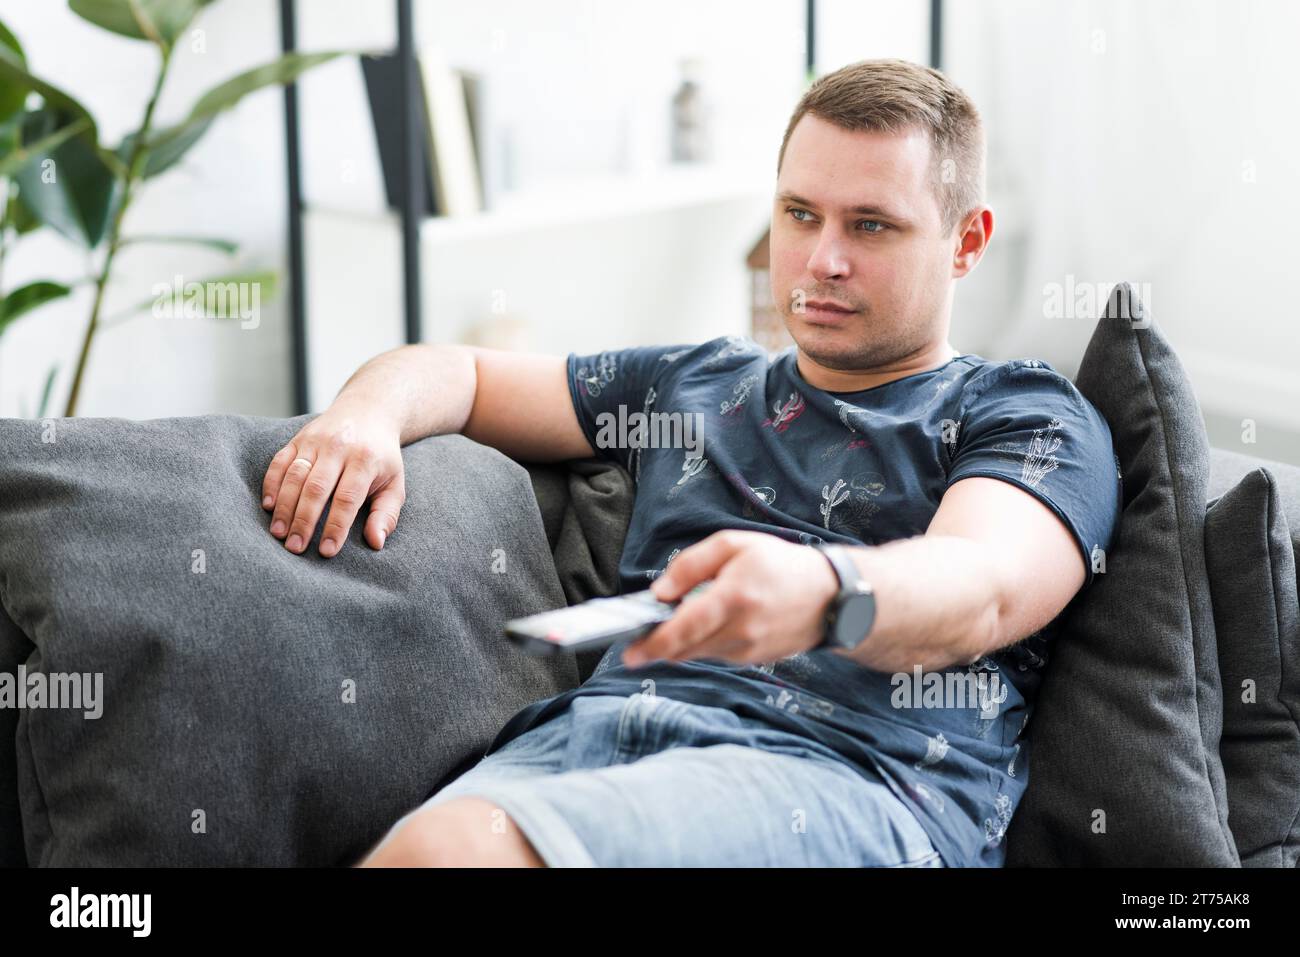 Mann im mittleren Erwachsenenalter, der auf Sofa sitzt und fernsehen sieht Stockfoto